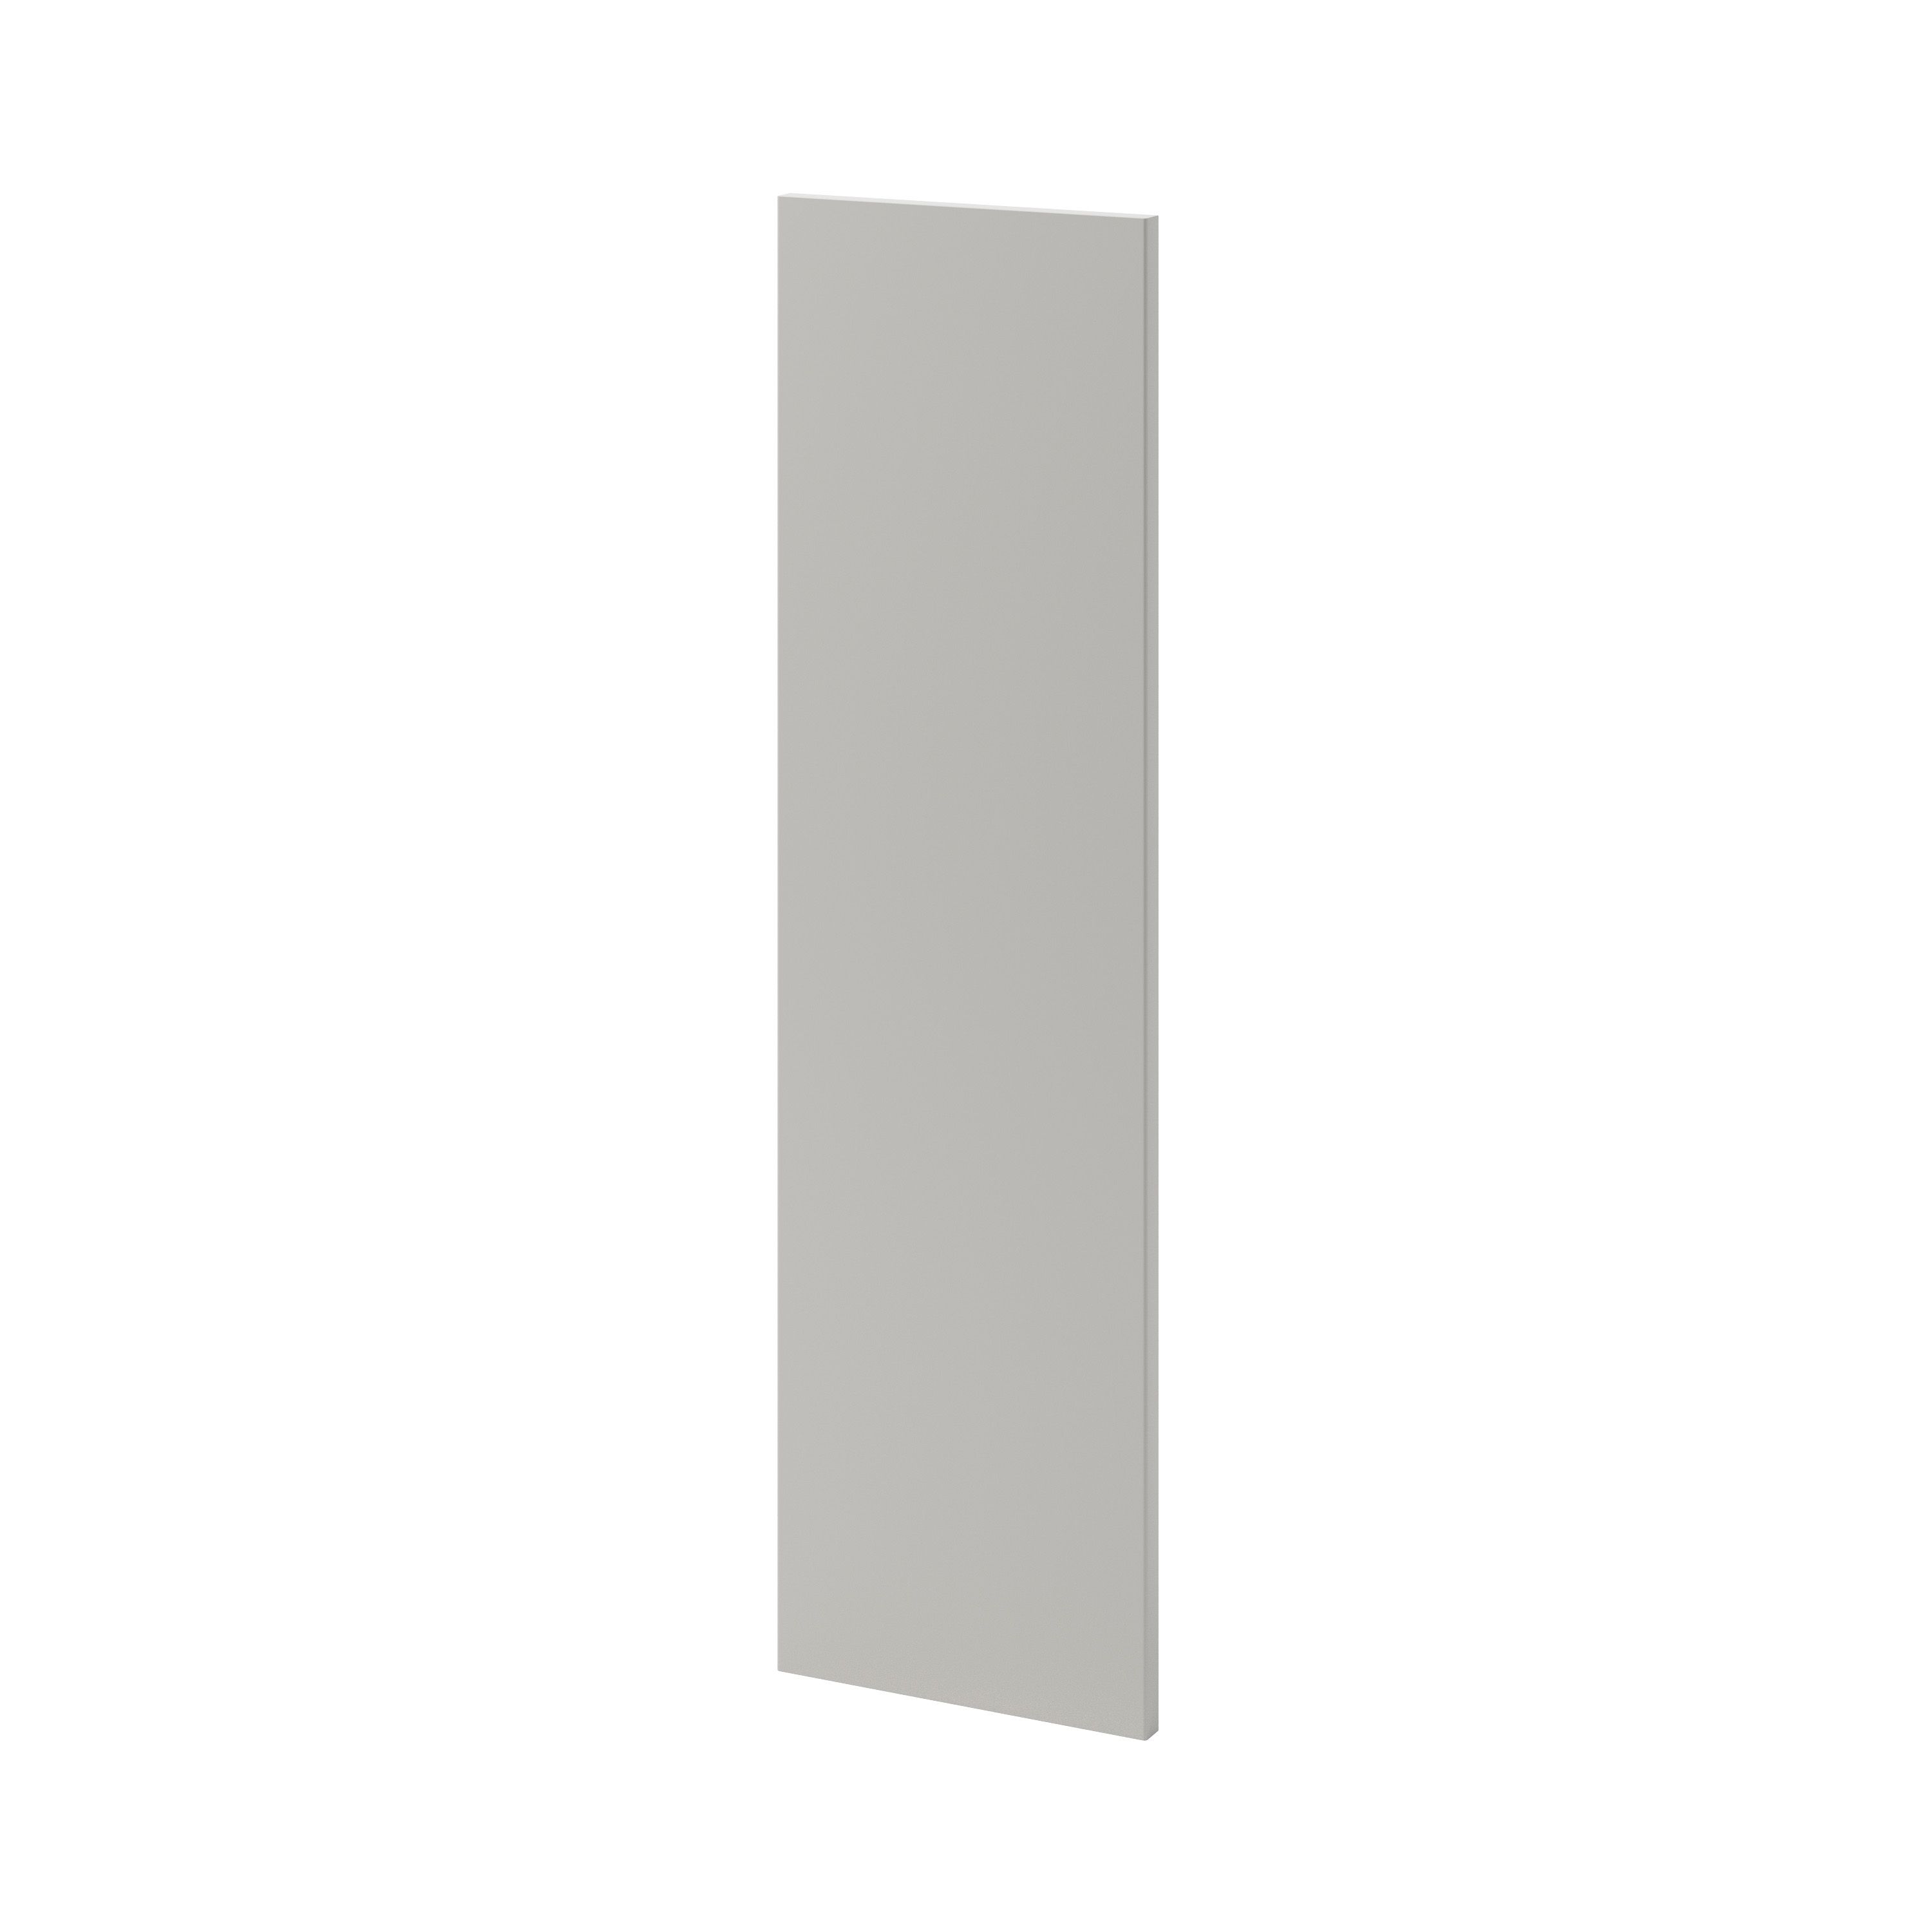 GoodHome Stevia Matt Pewter grey slab Tall wall Cabinet door (W)250mm (H)895mm (T)18mm